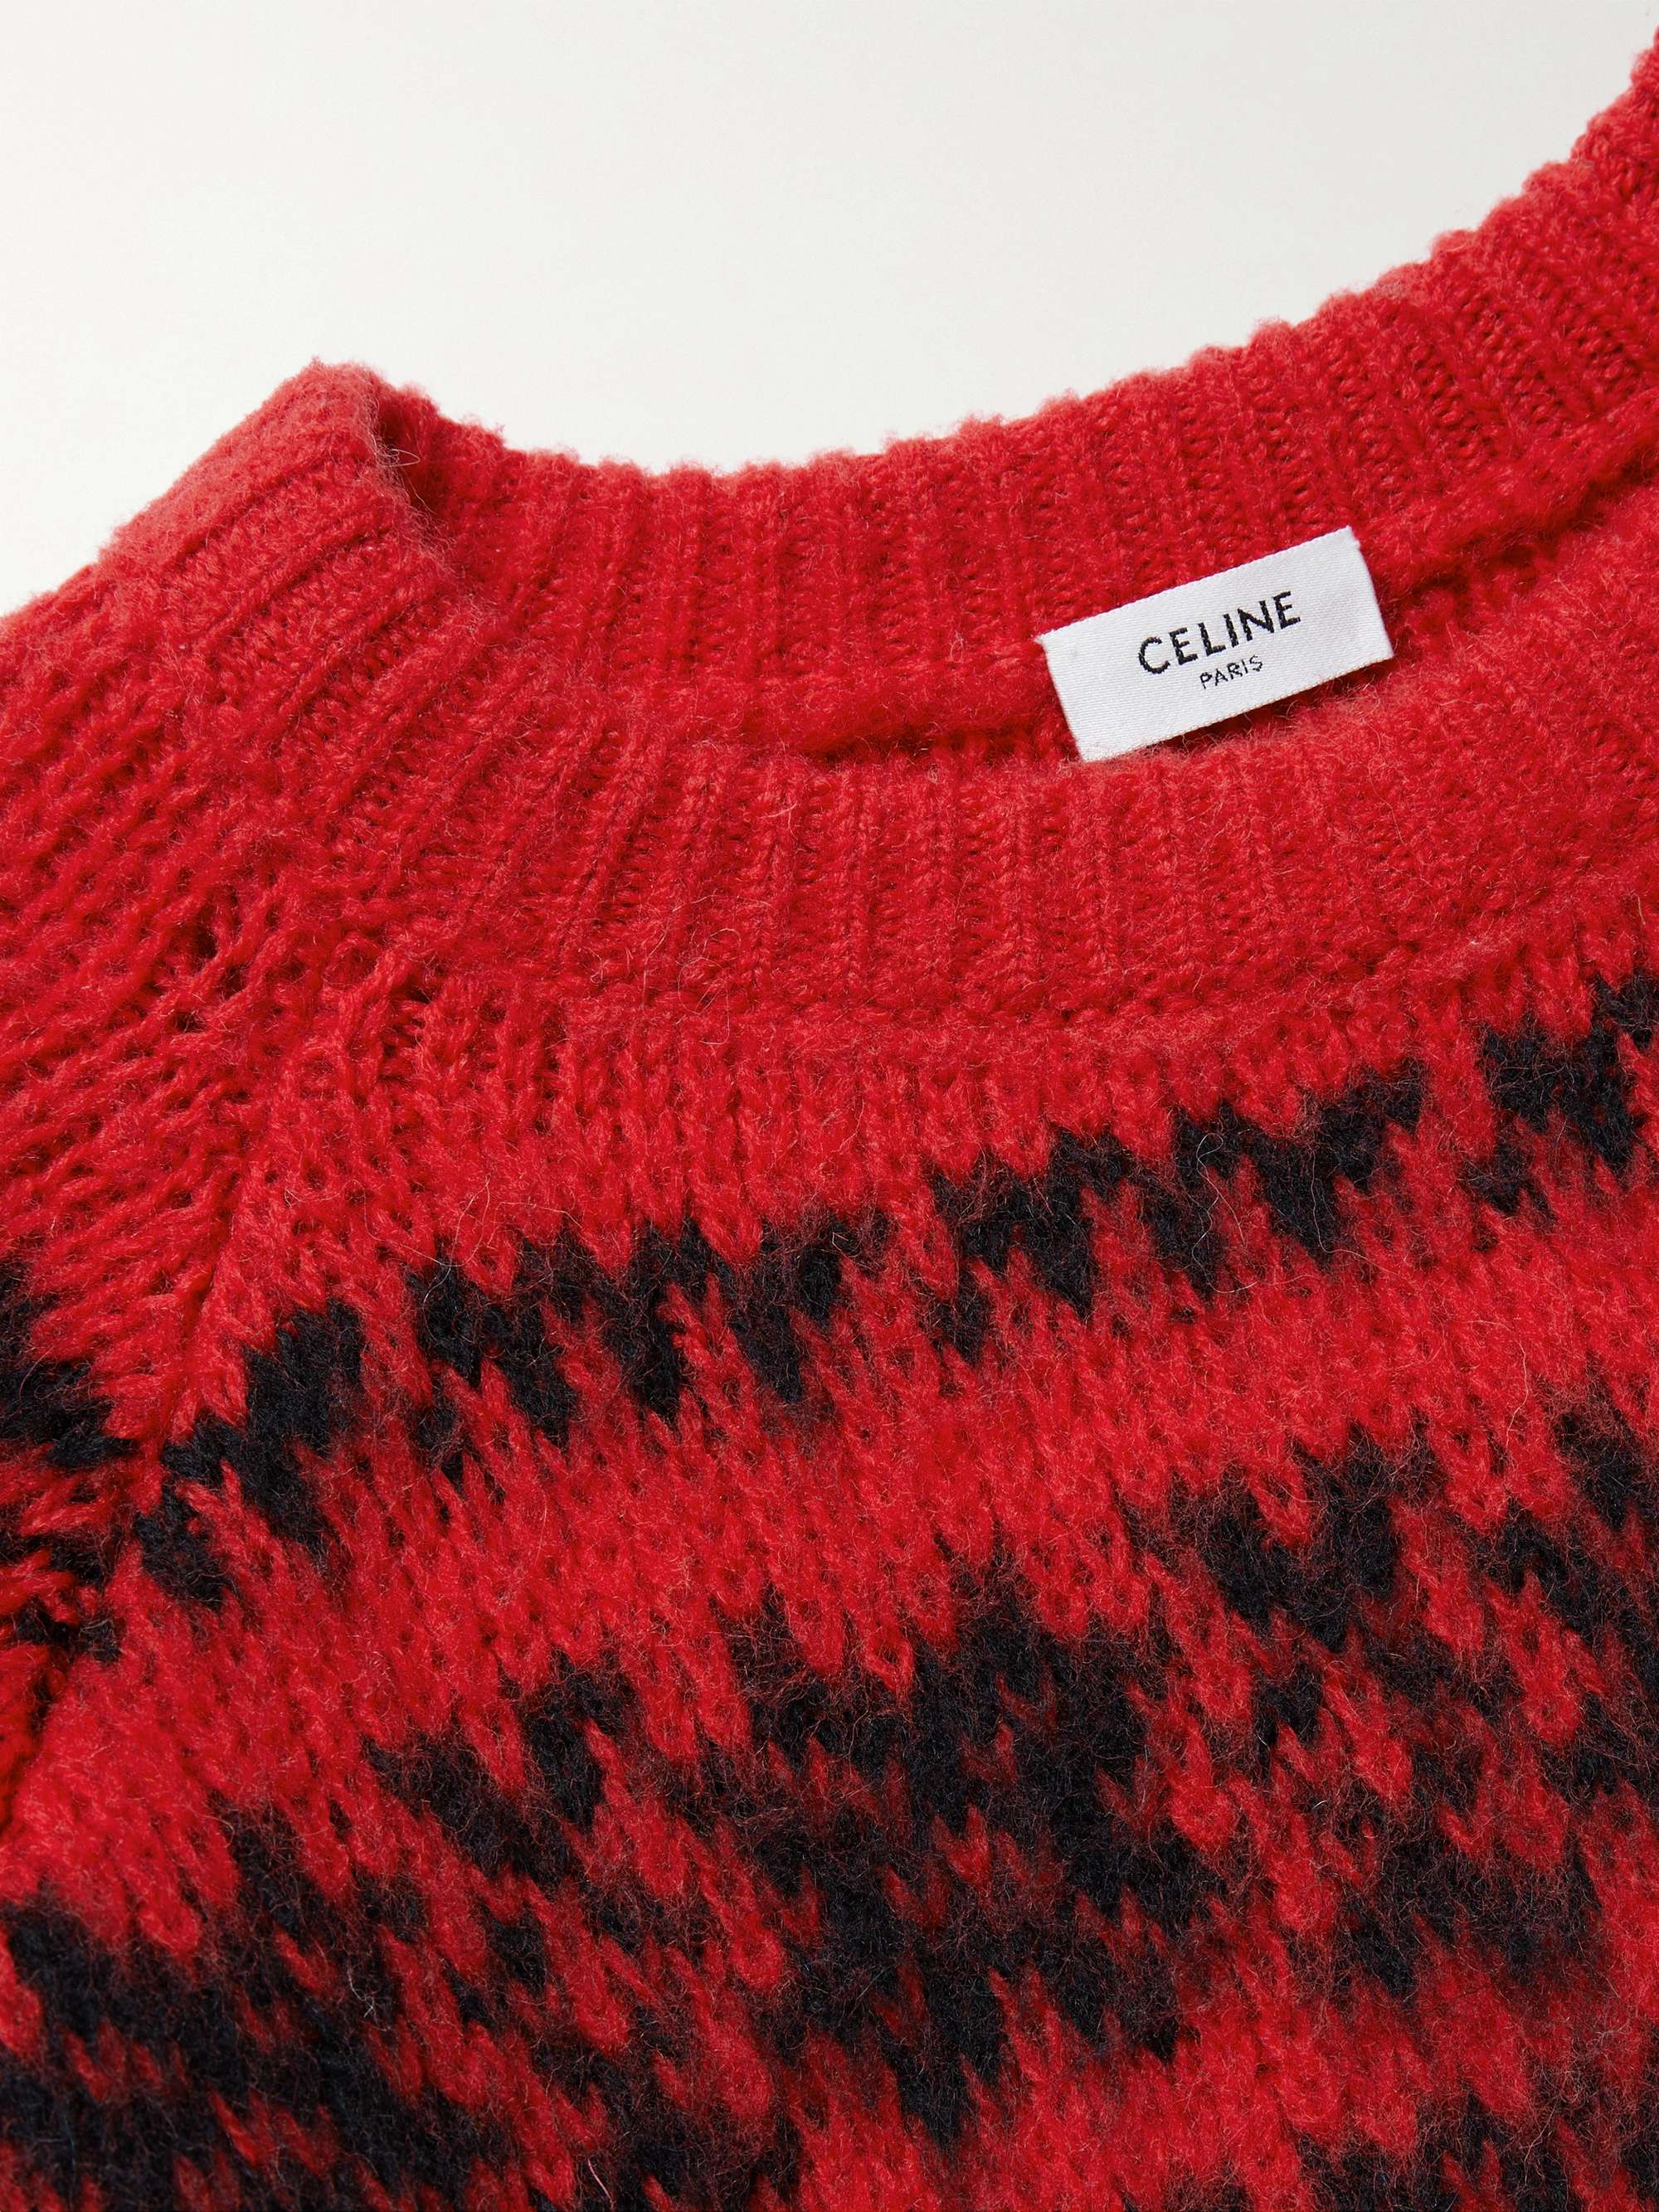 CELINE HOMME Fair Isle Wool-Jacquard Sweater